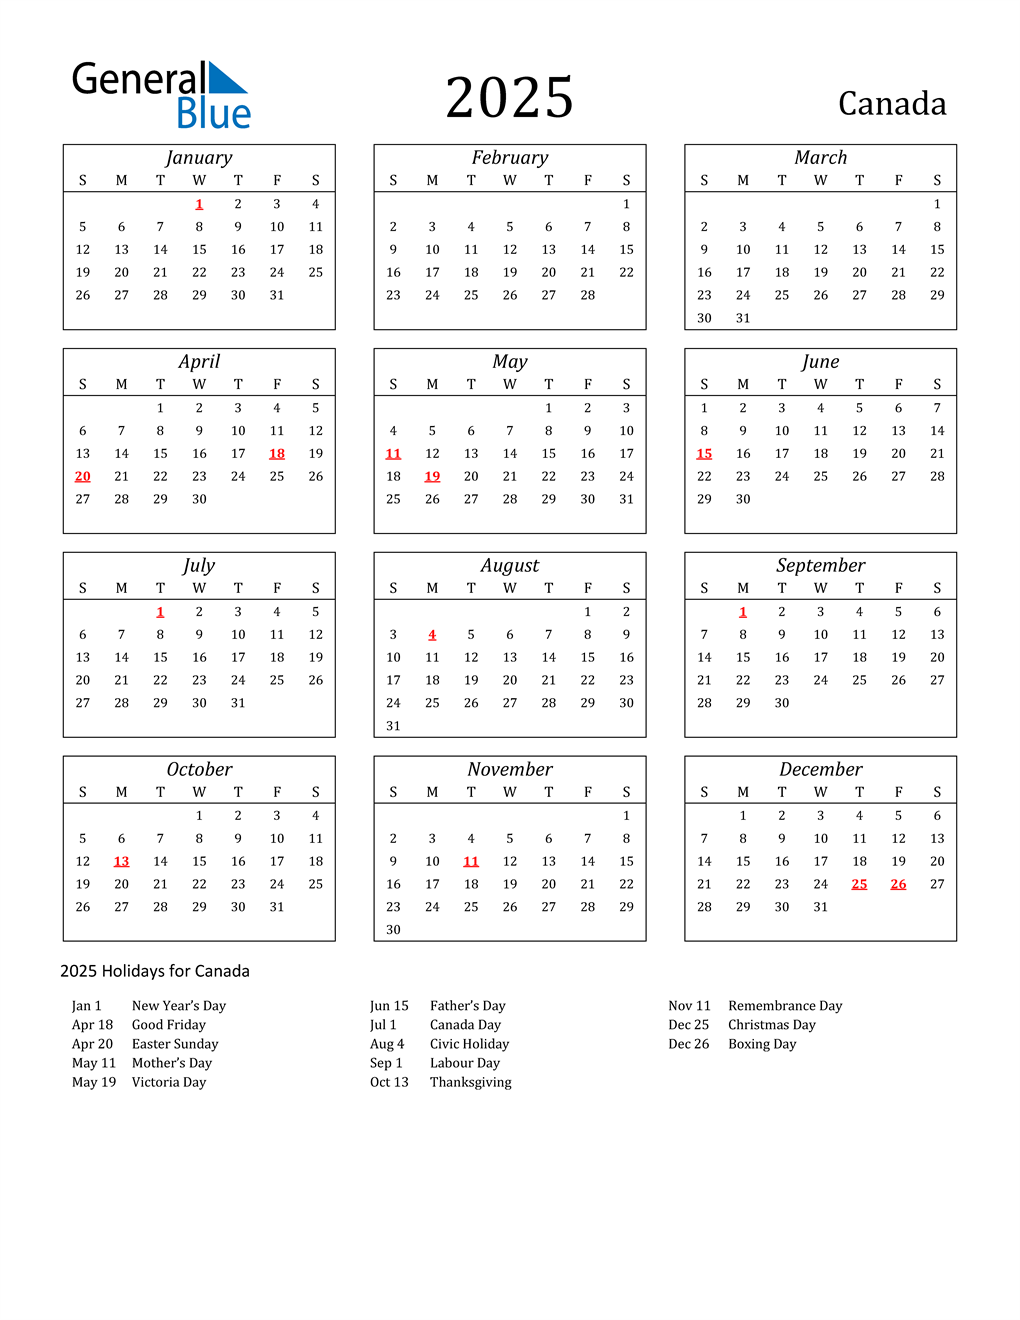 2023 Canada Holidays 2023 Calendar